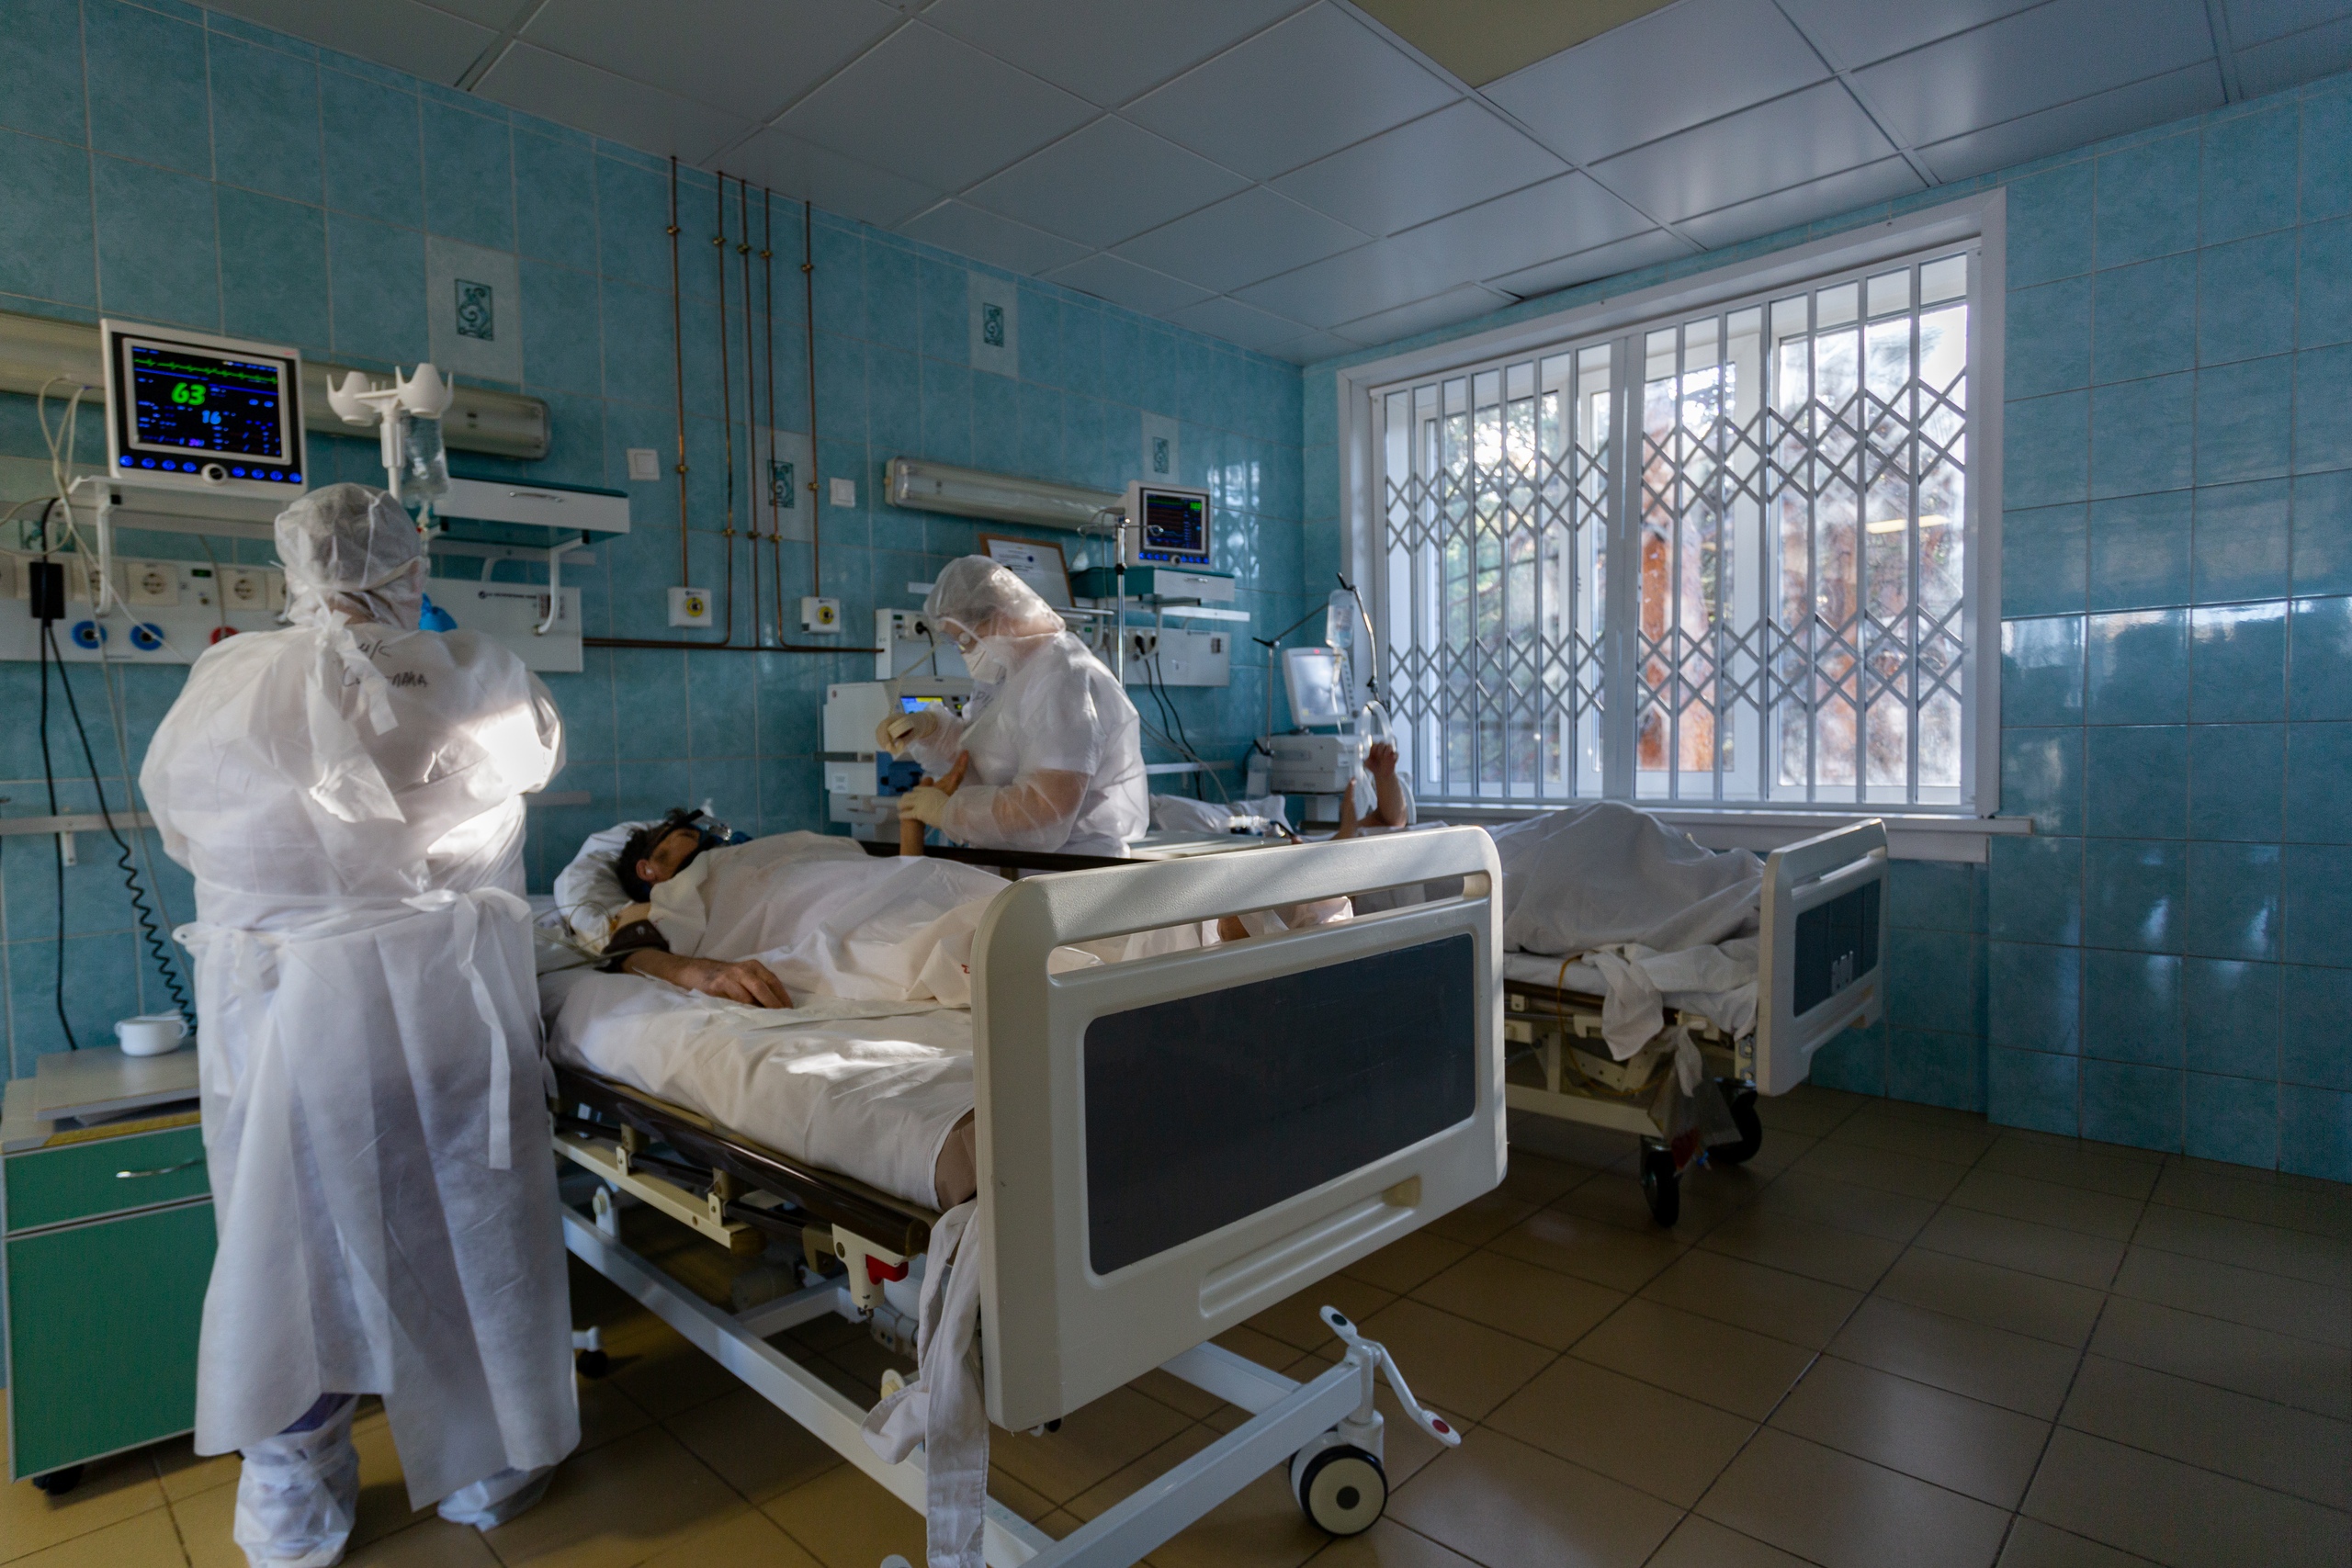 Сегодня случаев коронавируса. Пациент госпитализирован в инфекционную больницу. Ковидный госпиталь в Новосибирске 11 больница 2021 год. Ковидный госпиталь реанимация в Москве. Тяжелая больная в больнице.